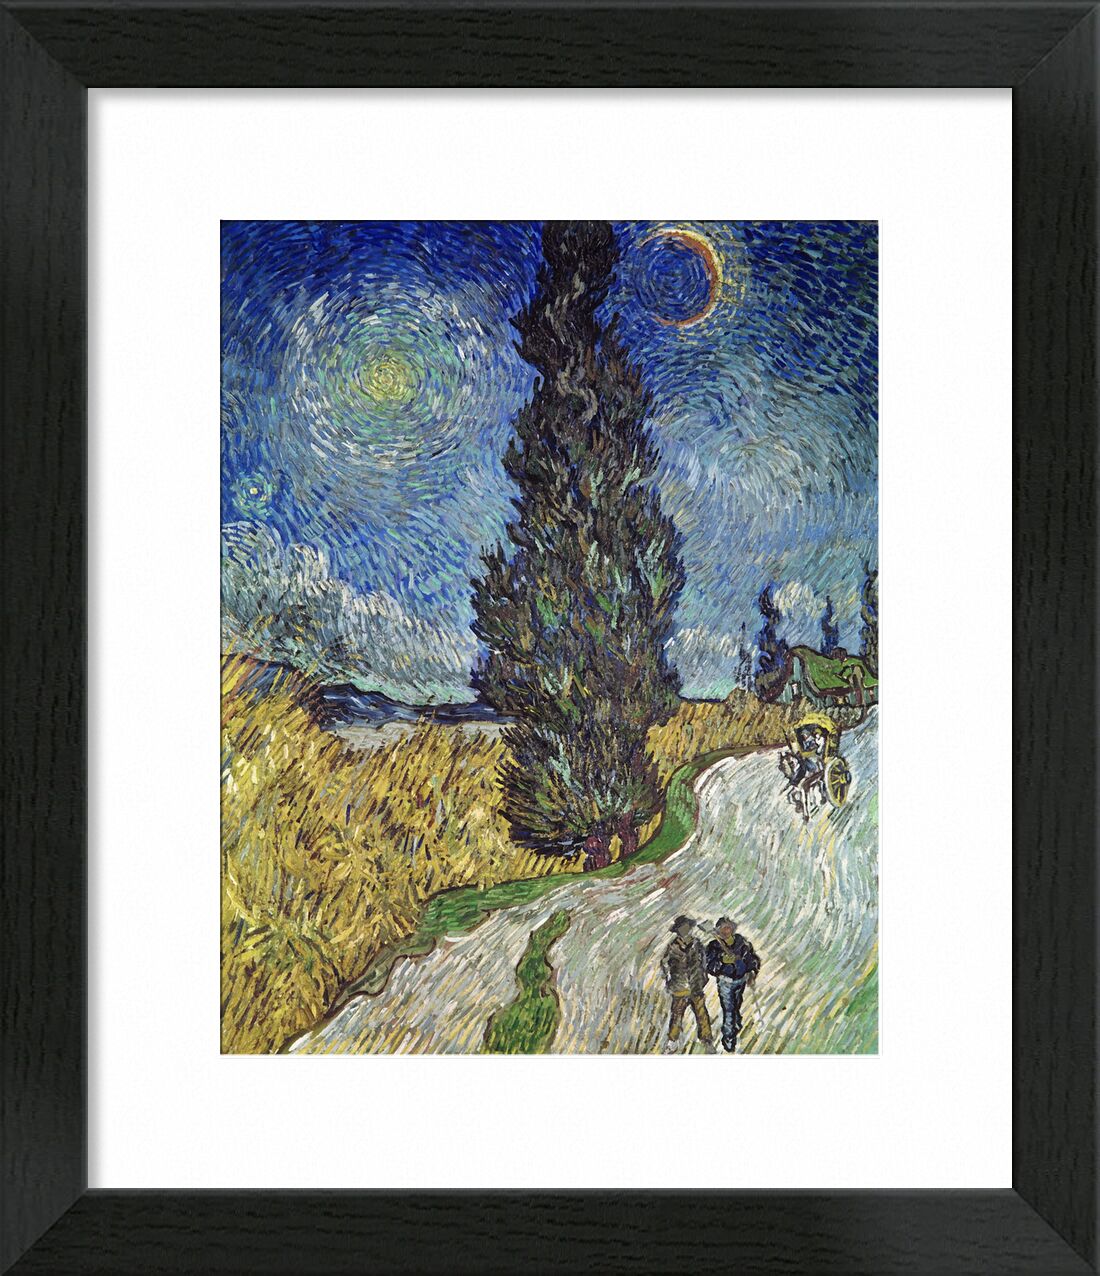 Country Road with Cypress and Star - Van Gogh desde Bellas artes, Prodi Art, cielo, sol, estrella, Pareja, camino, pintura, Van gogh